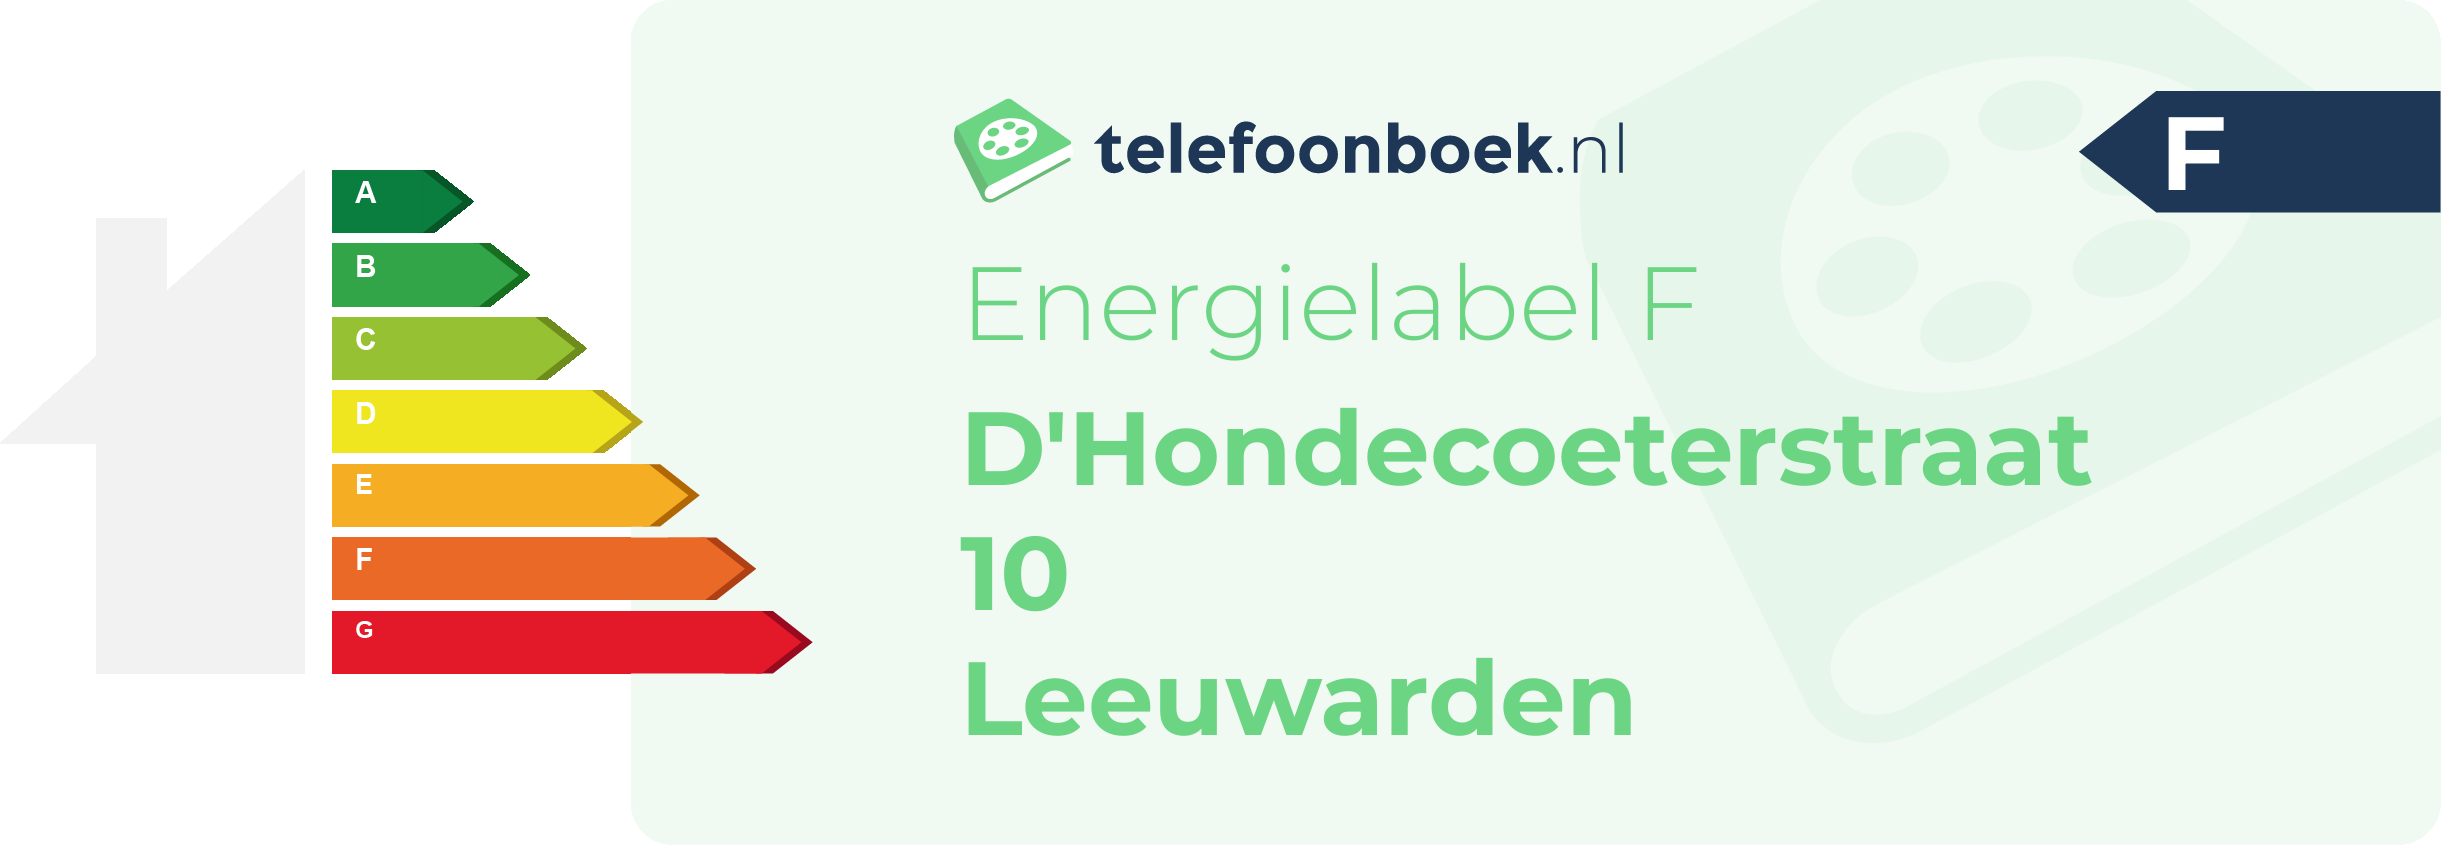 Energielabel D'Hondecoeterstraat 10 Leeuwarden